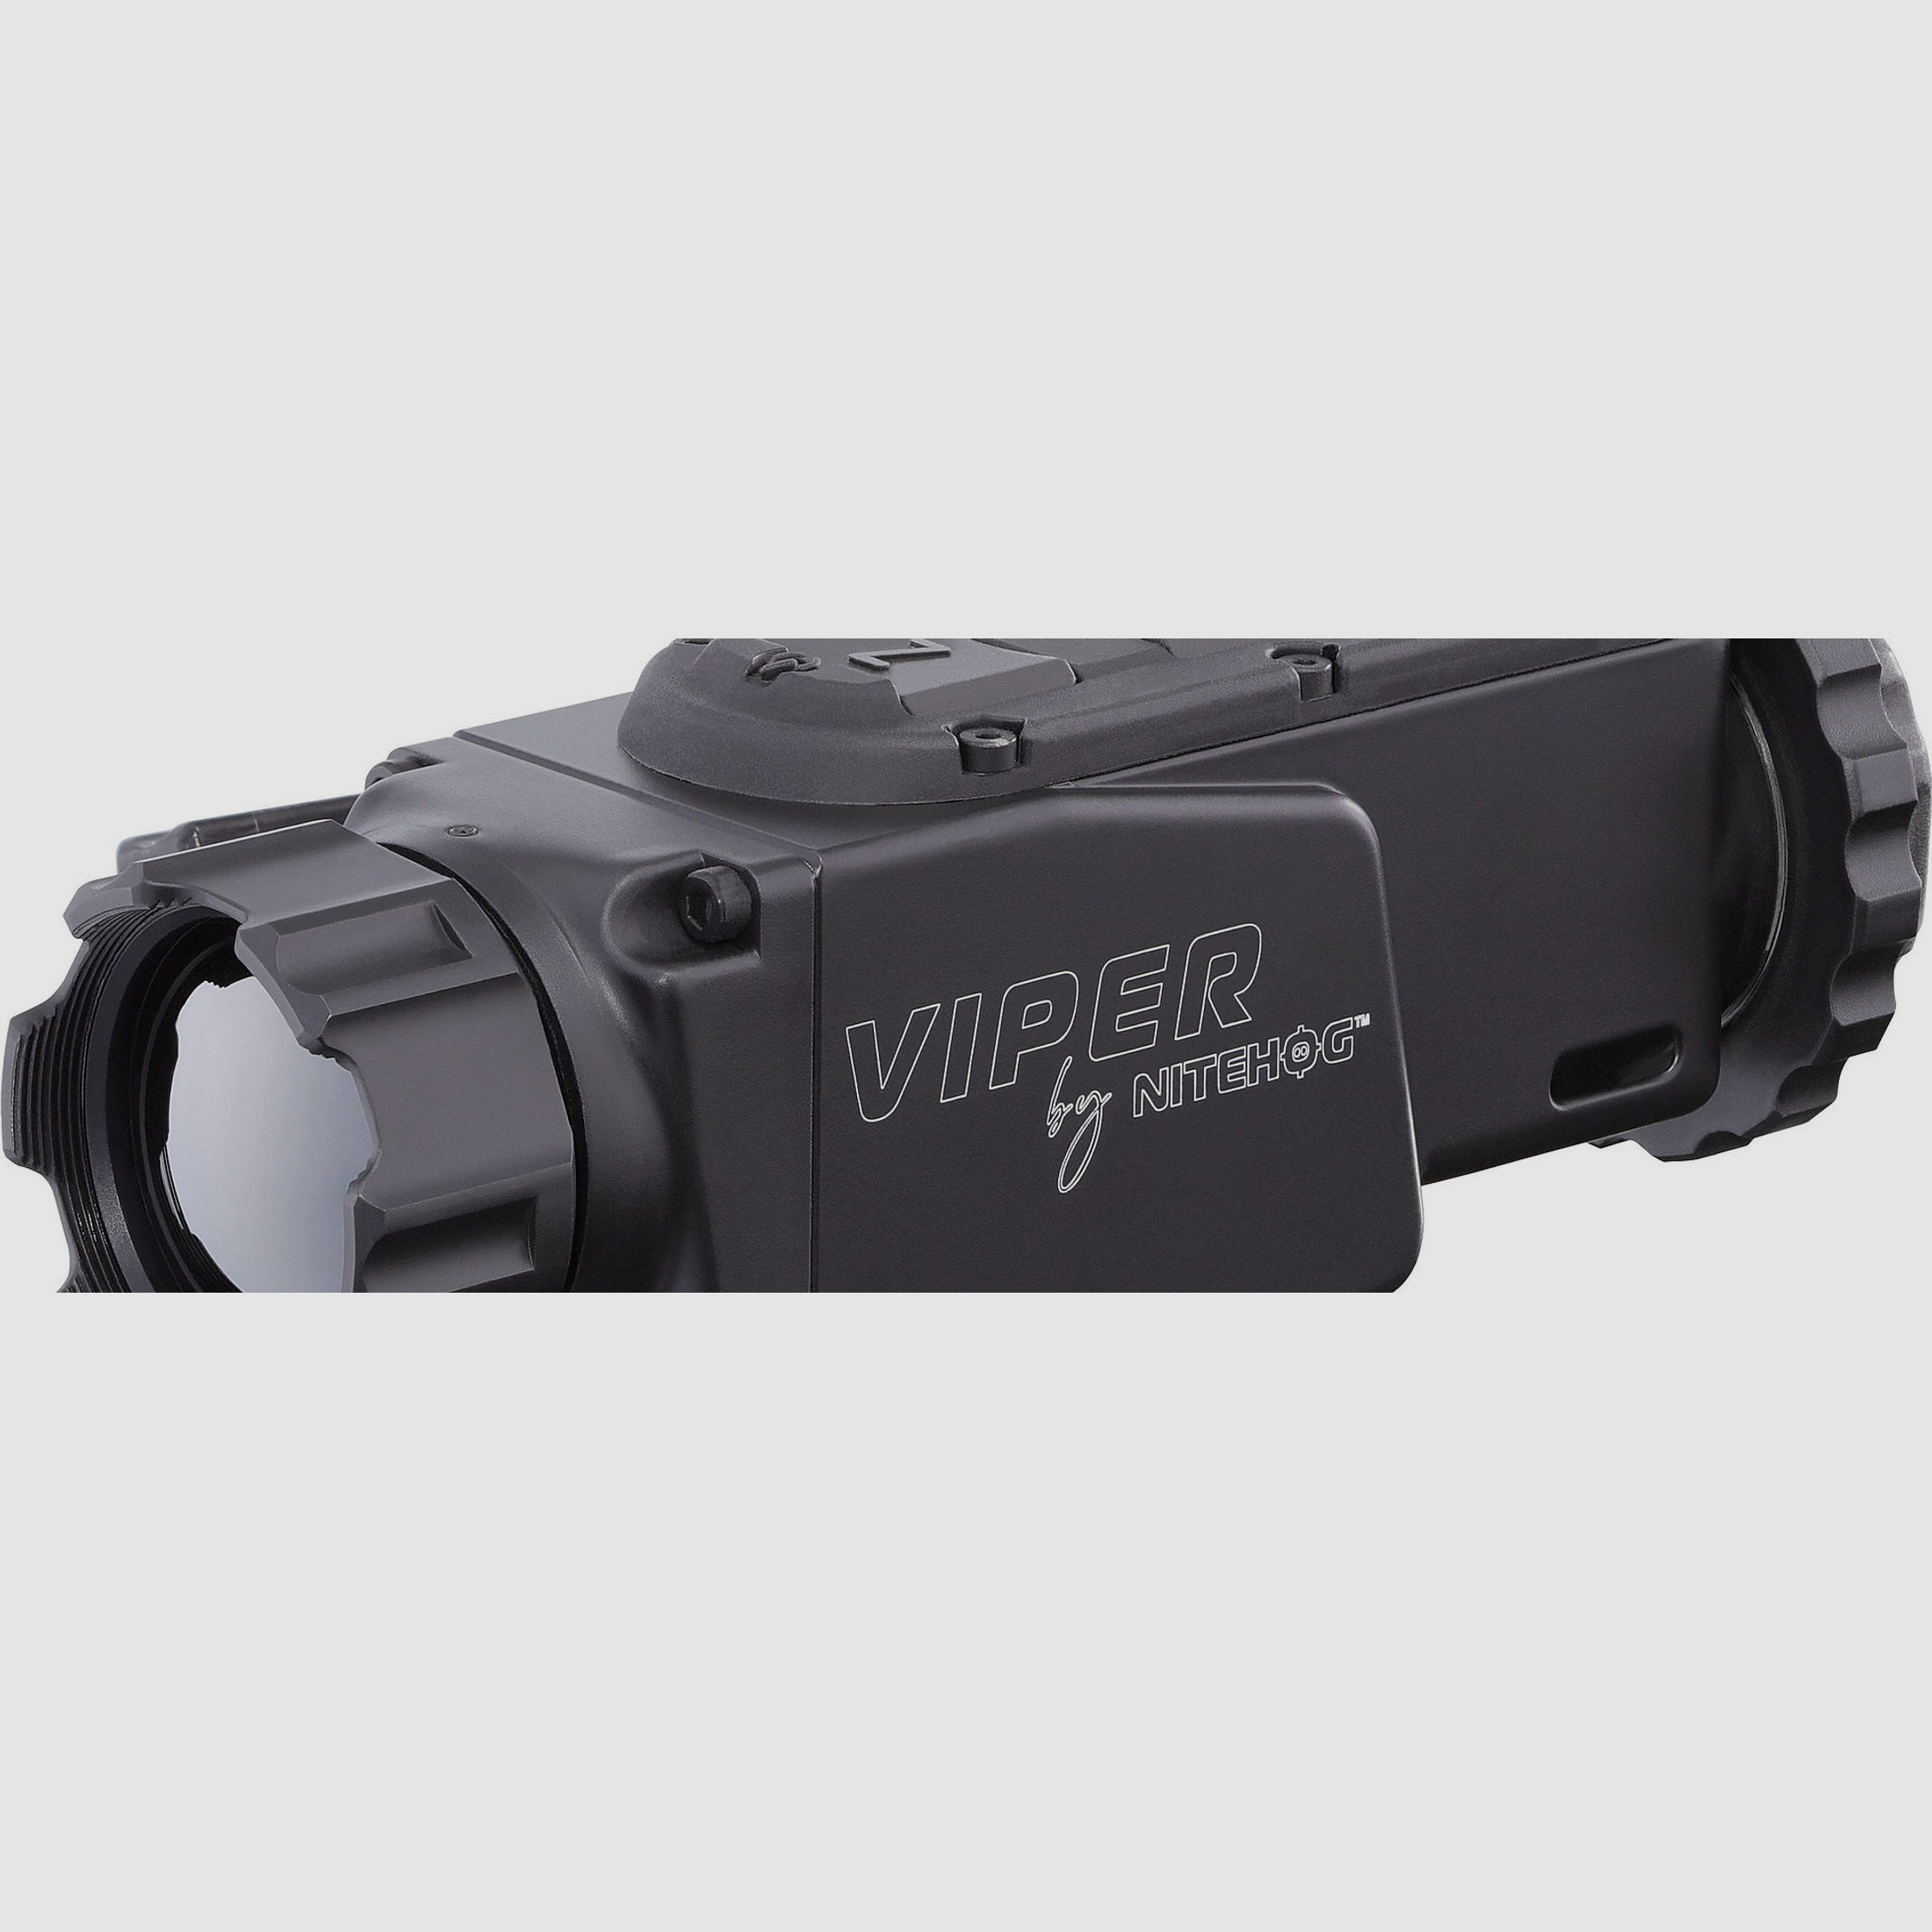 NITEHOG VIPER TIR-M35 AC Wärmebild-Vorsatzgerät